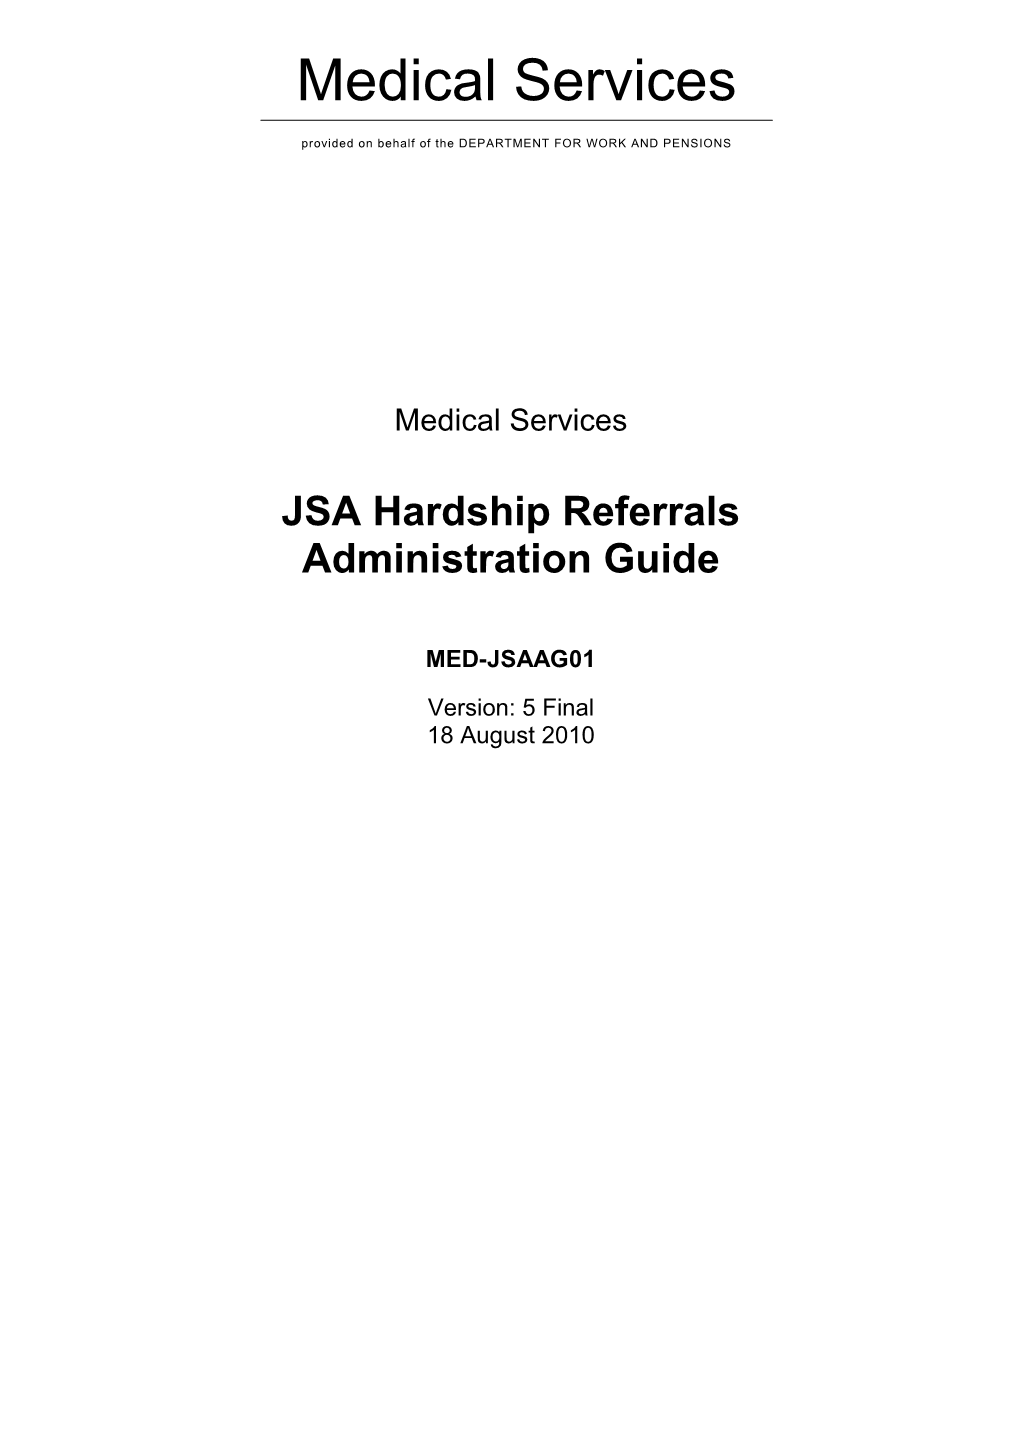 JSA Hardship Referrals Administration Guide